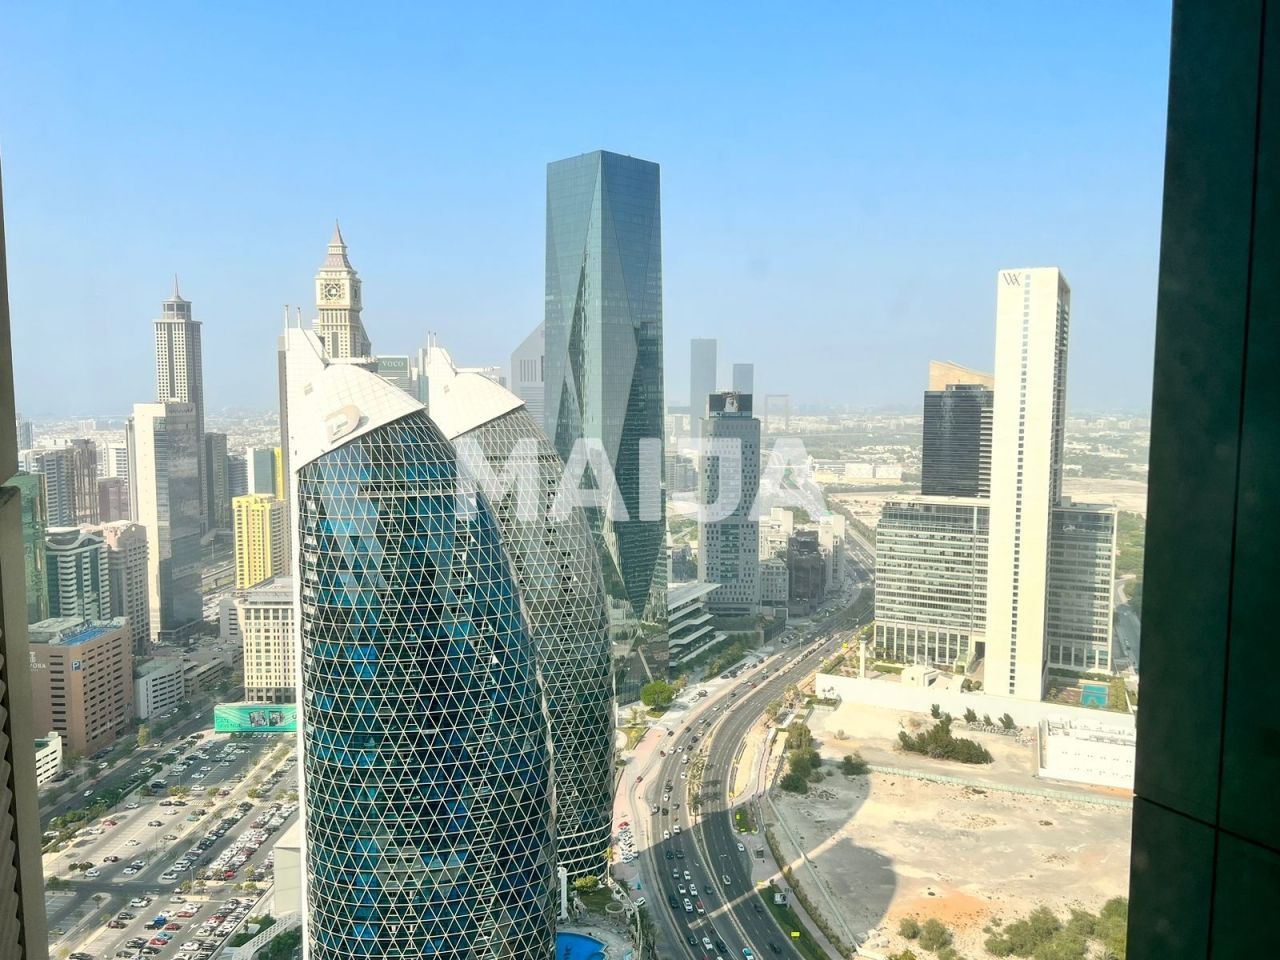 Apartment in Dubai, UAE, 100 sq.m - picture 1